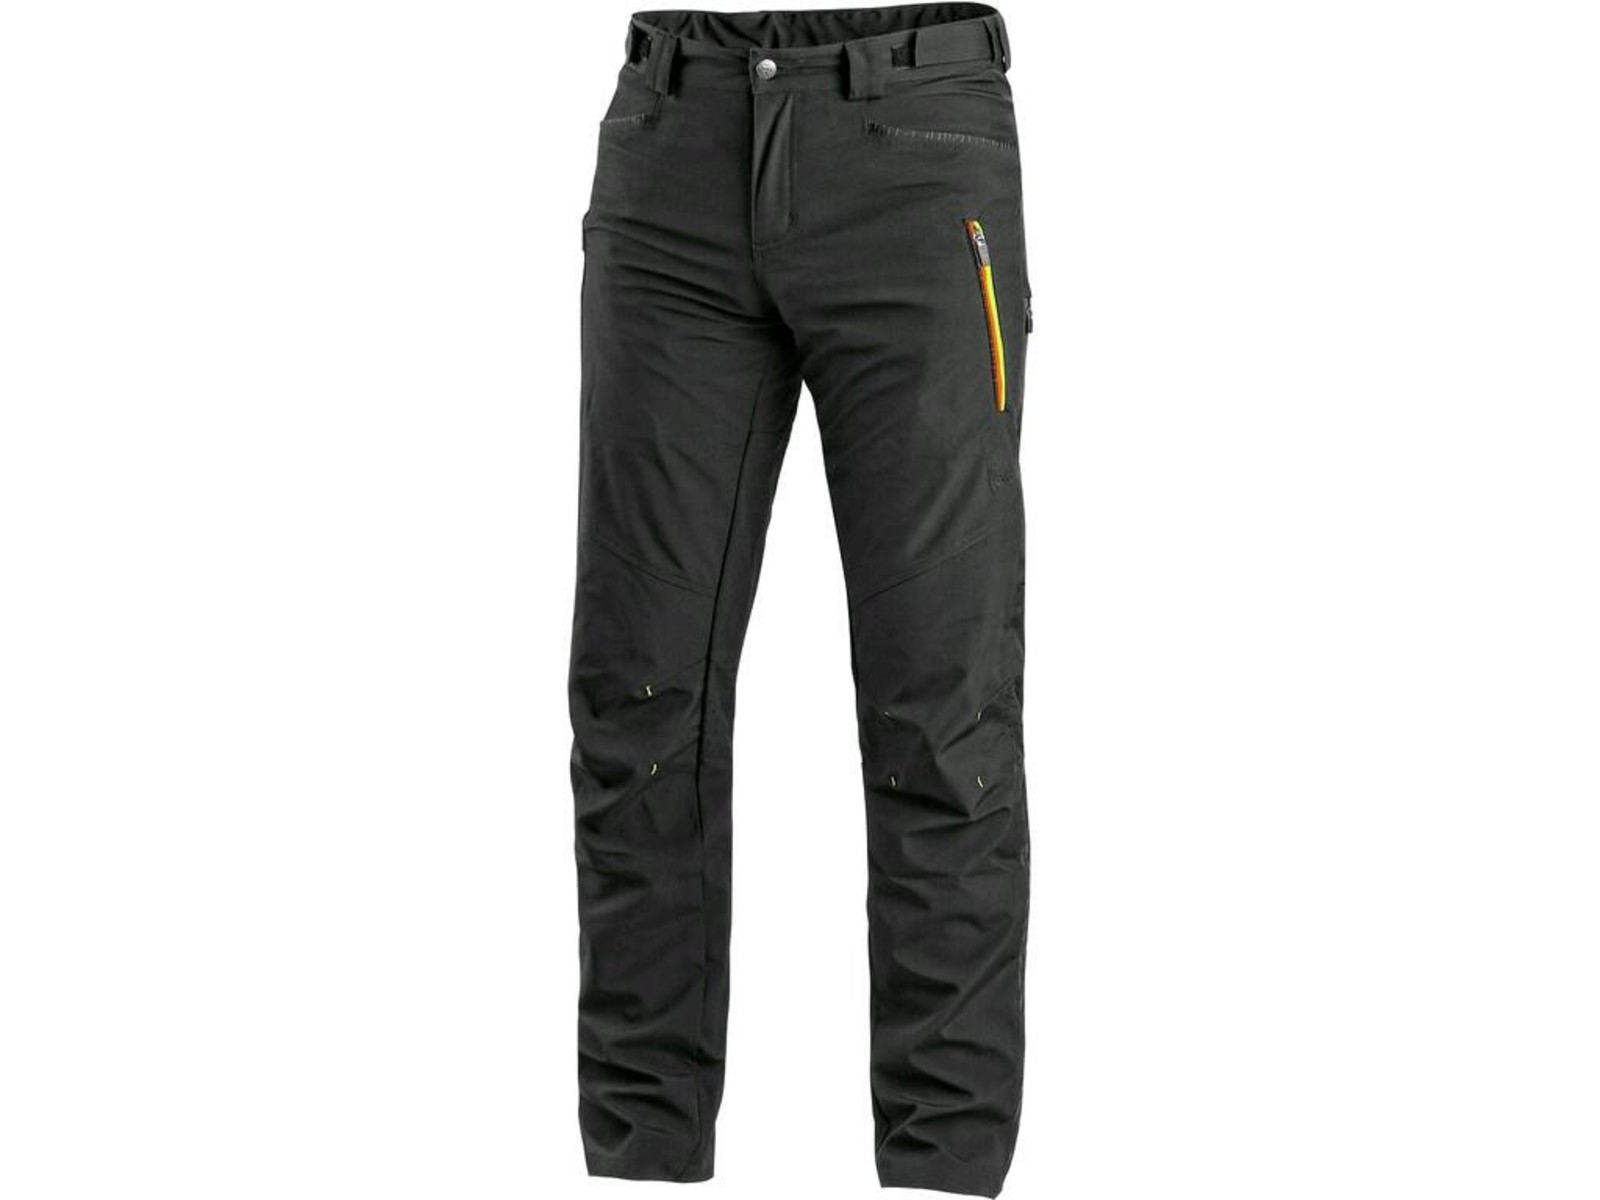 Pánske softshellové nohavice CXS Akron - veľkosť: 50, farba: čierna/žltá